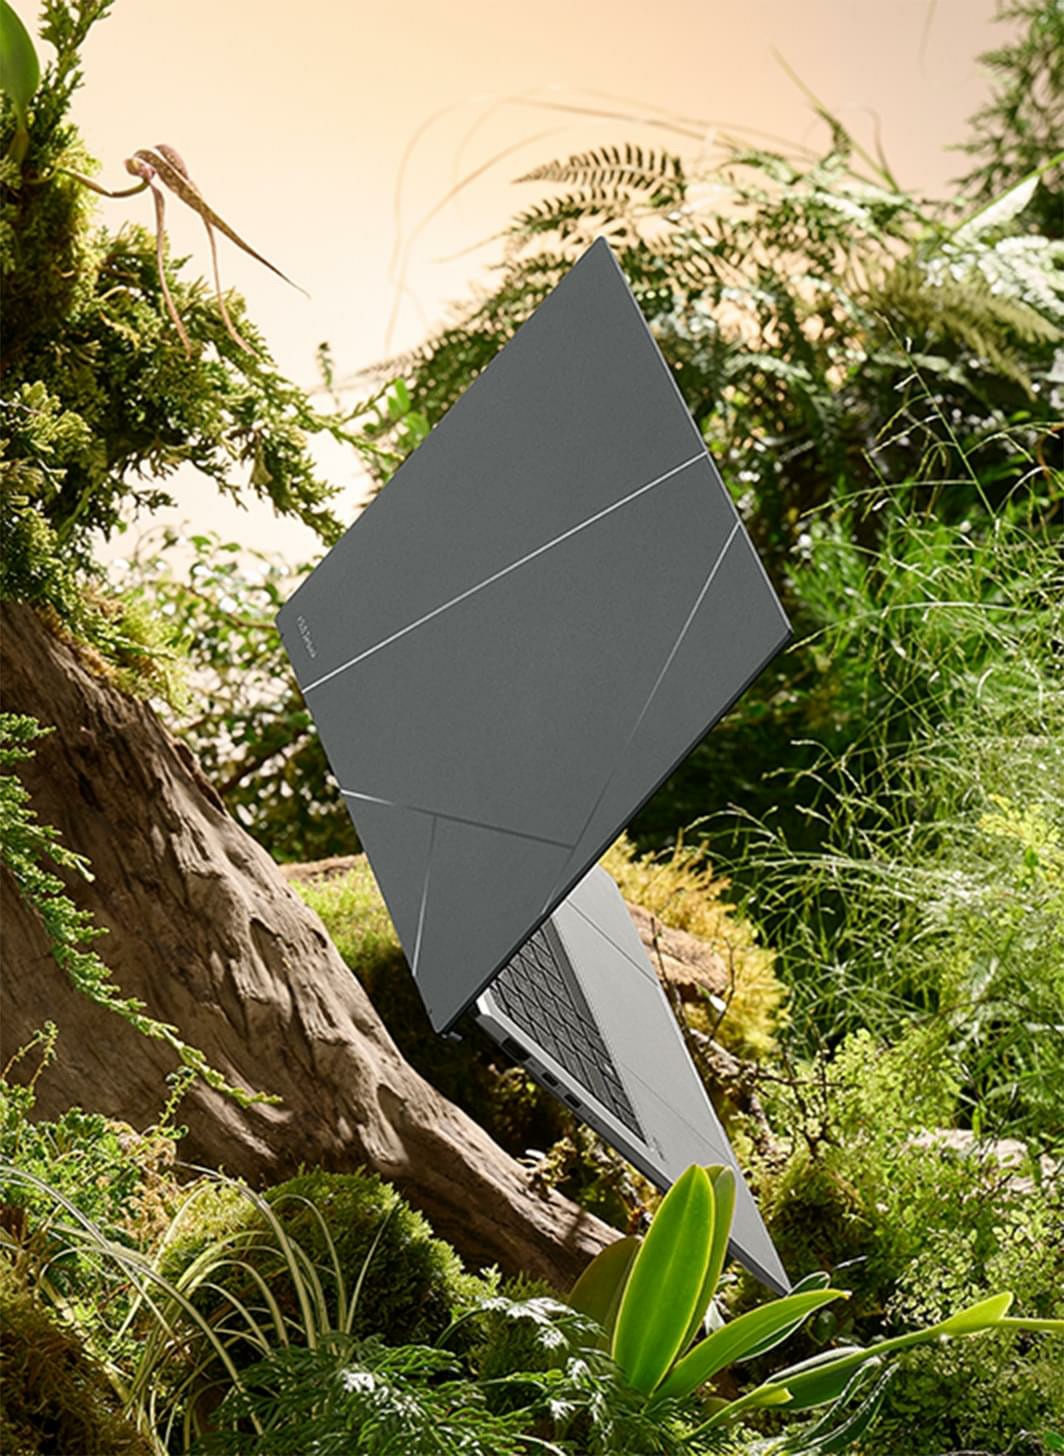 Zenbook S 13 OLED được đặt trong rừng.